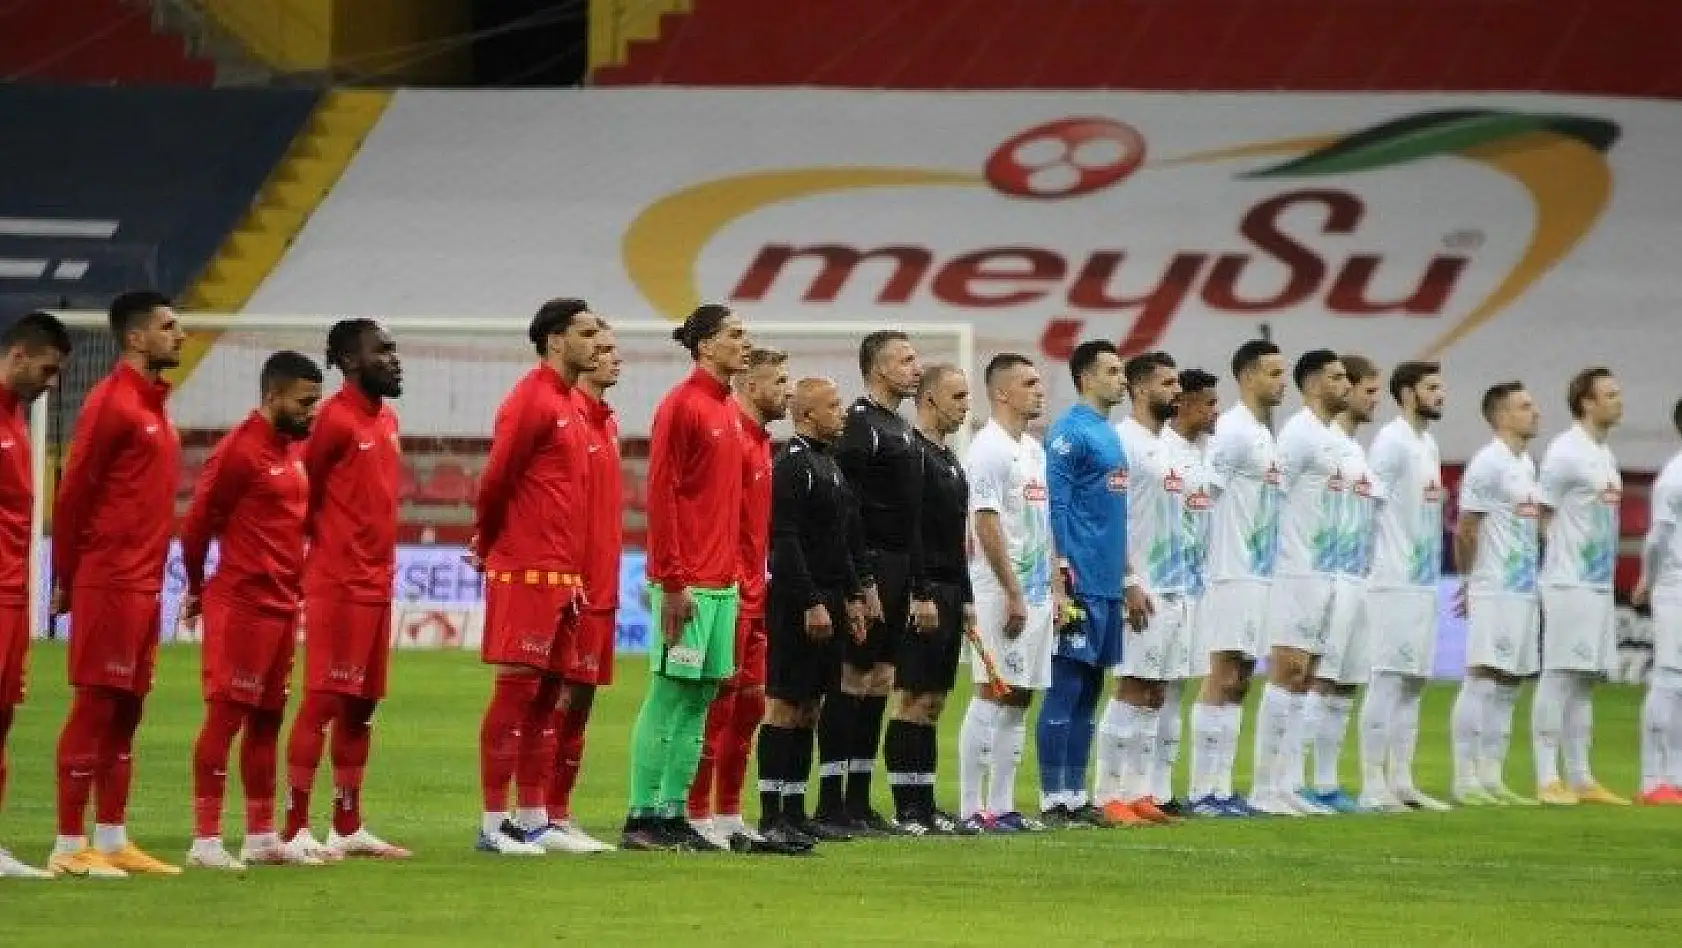 Süper Lig: Kayserispor: 0 - Çaykur Rizespor: 0 (Maç devam ediyor)